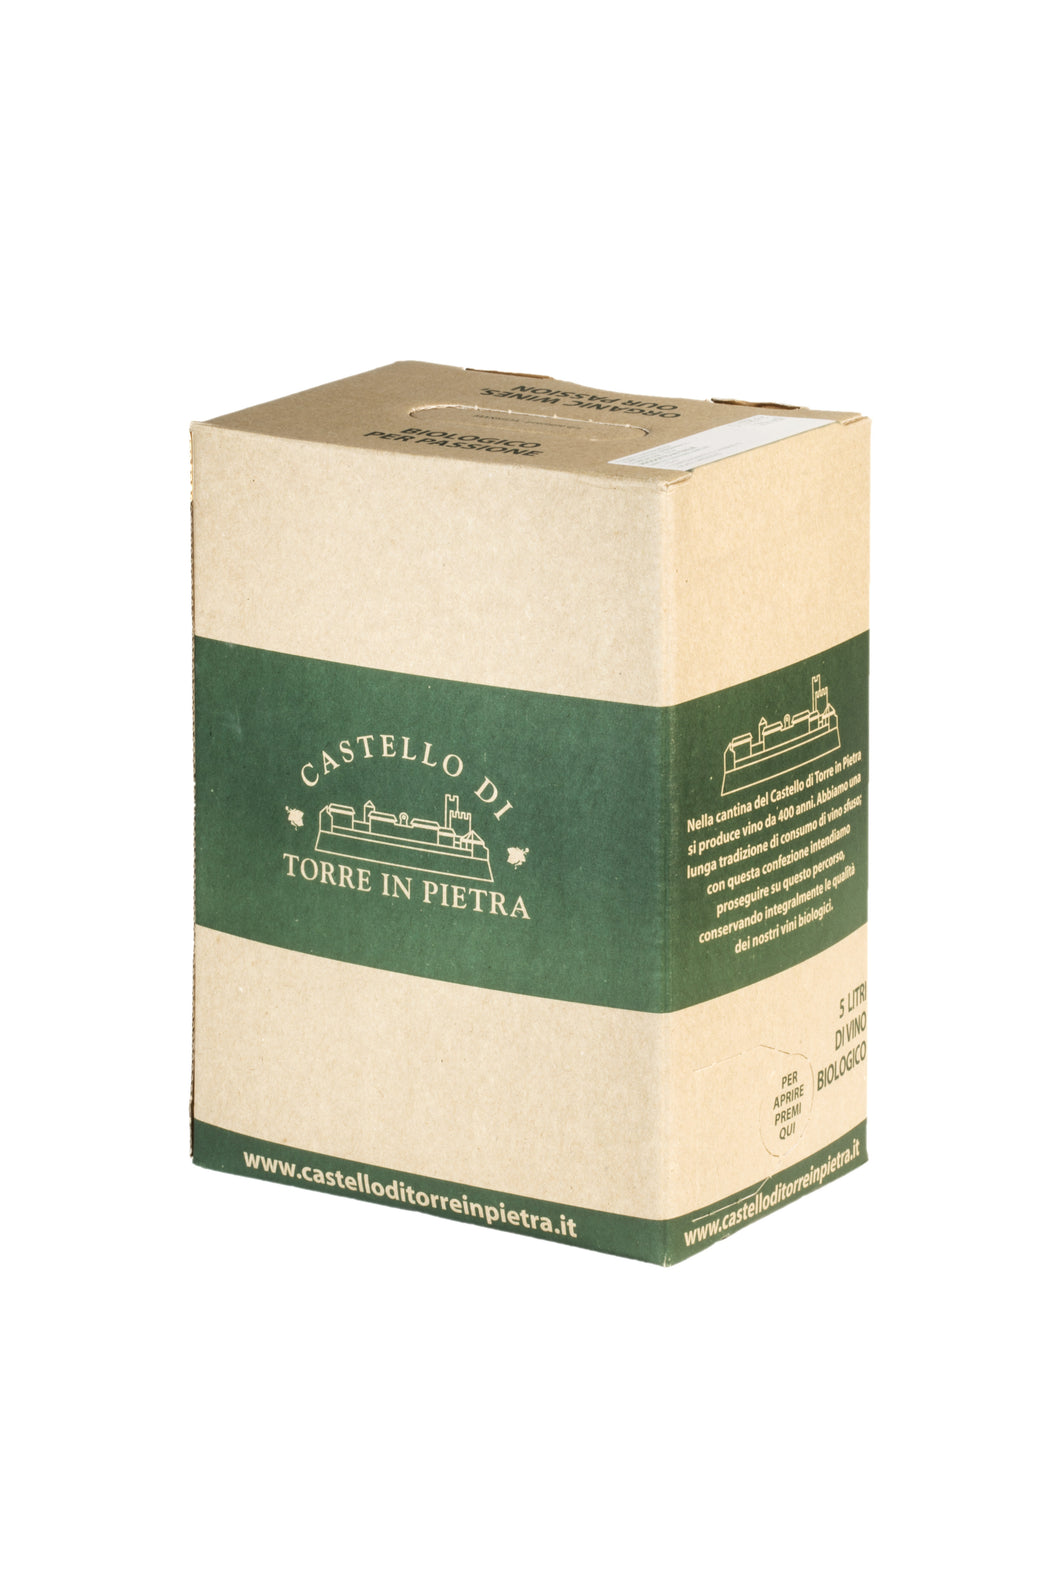 Bag in Box (5LT) - Chardonnay IGT Lazio Bio